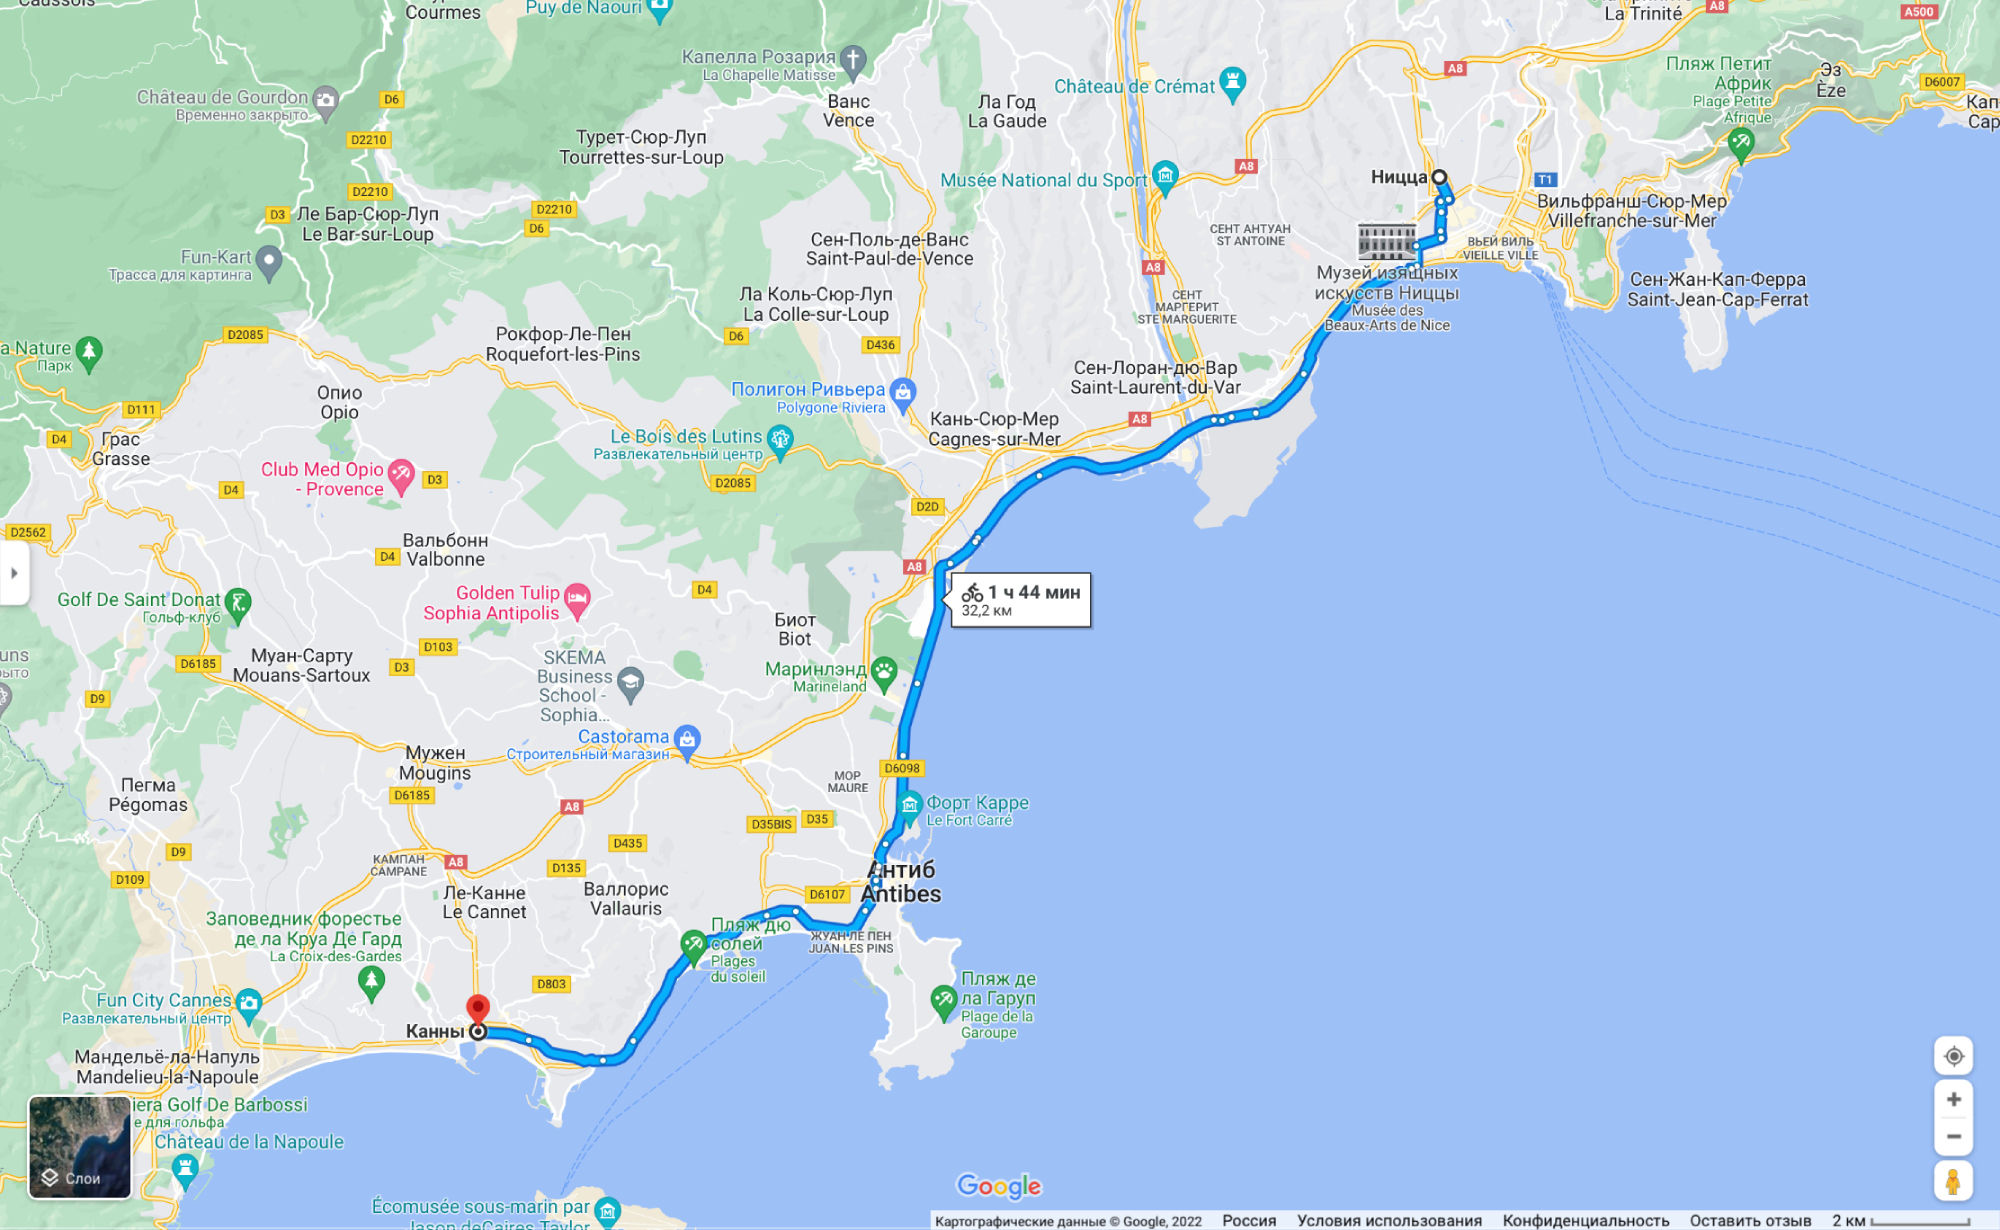 Велосипедный маршрут из Ниццы в Канны через Антиб. Источник: google.com